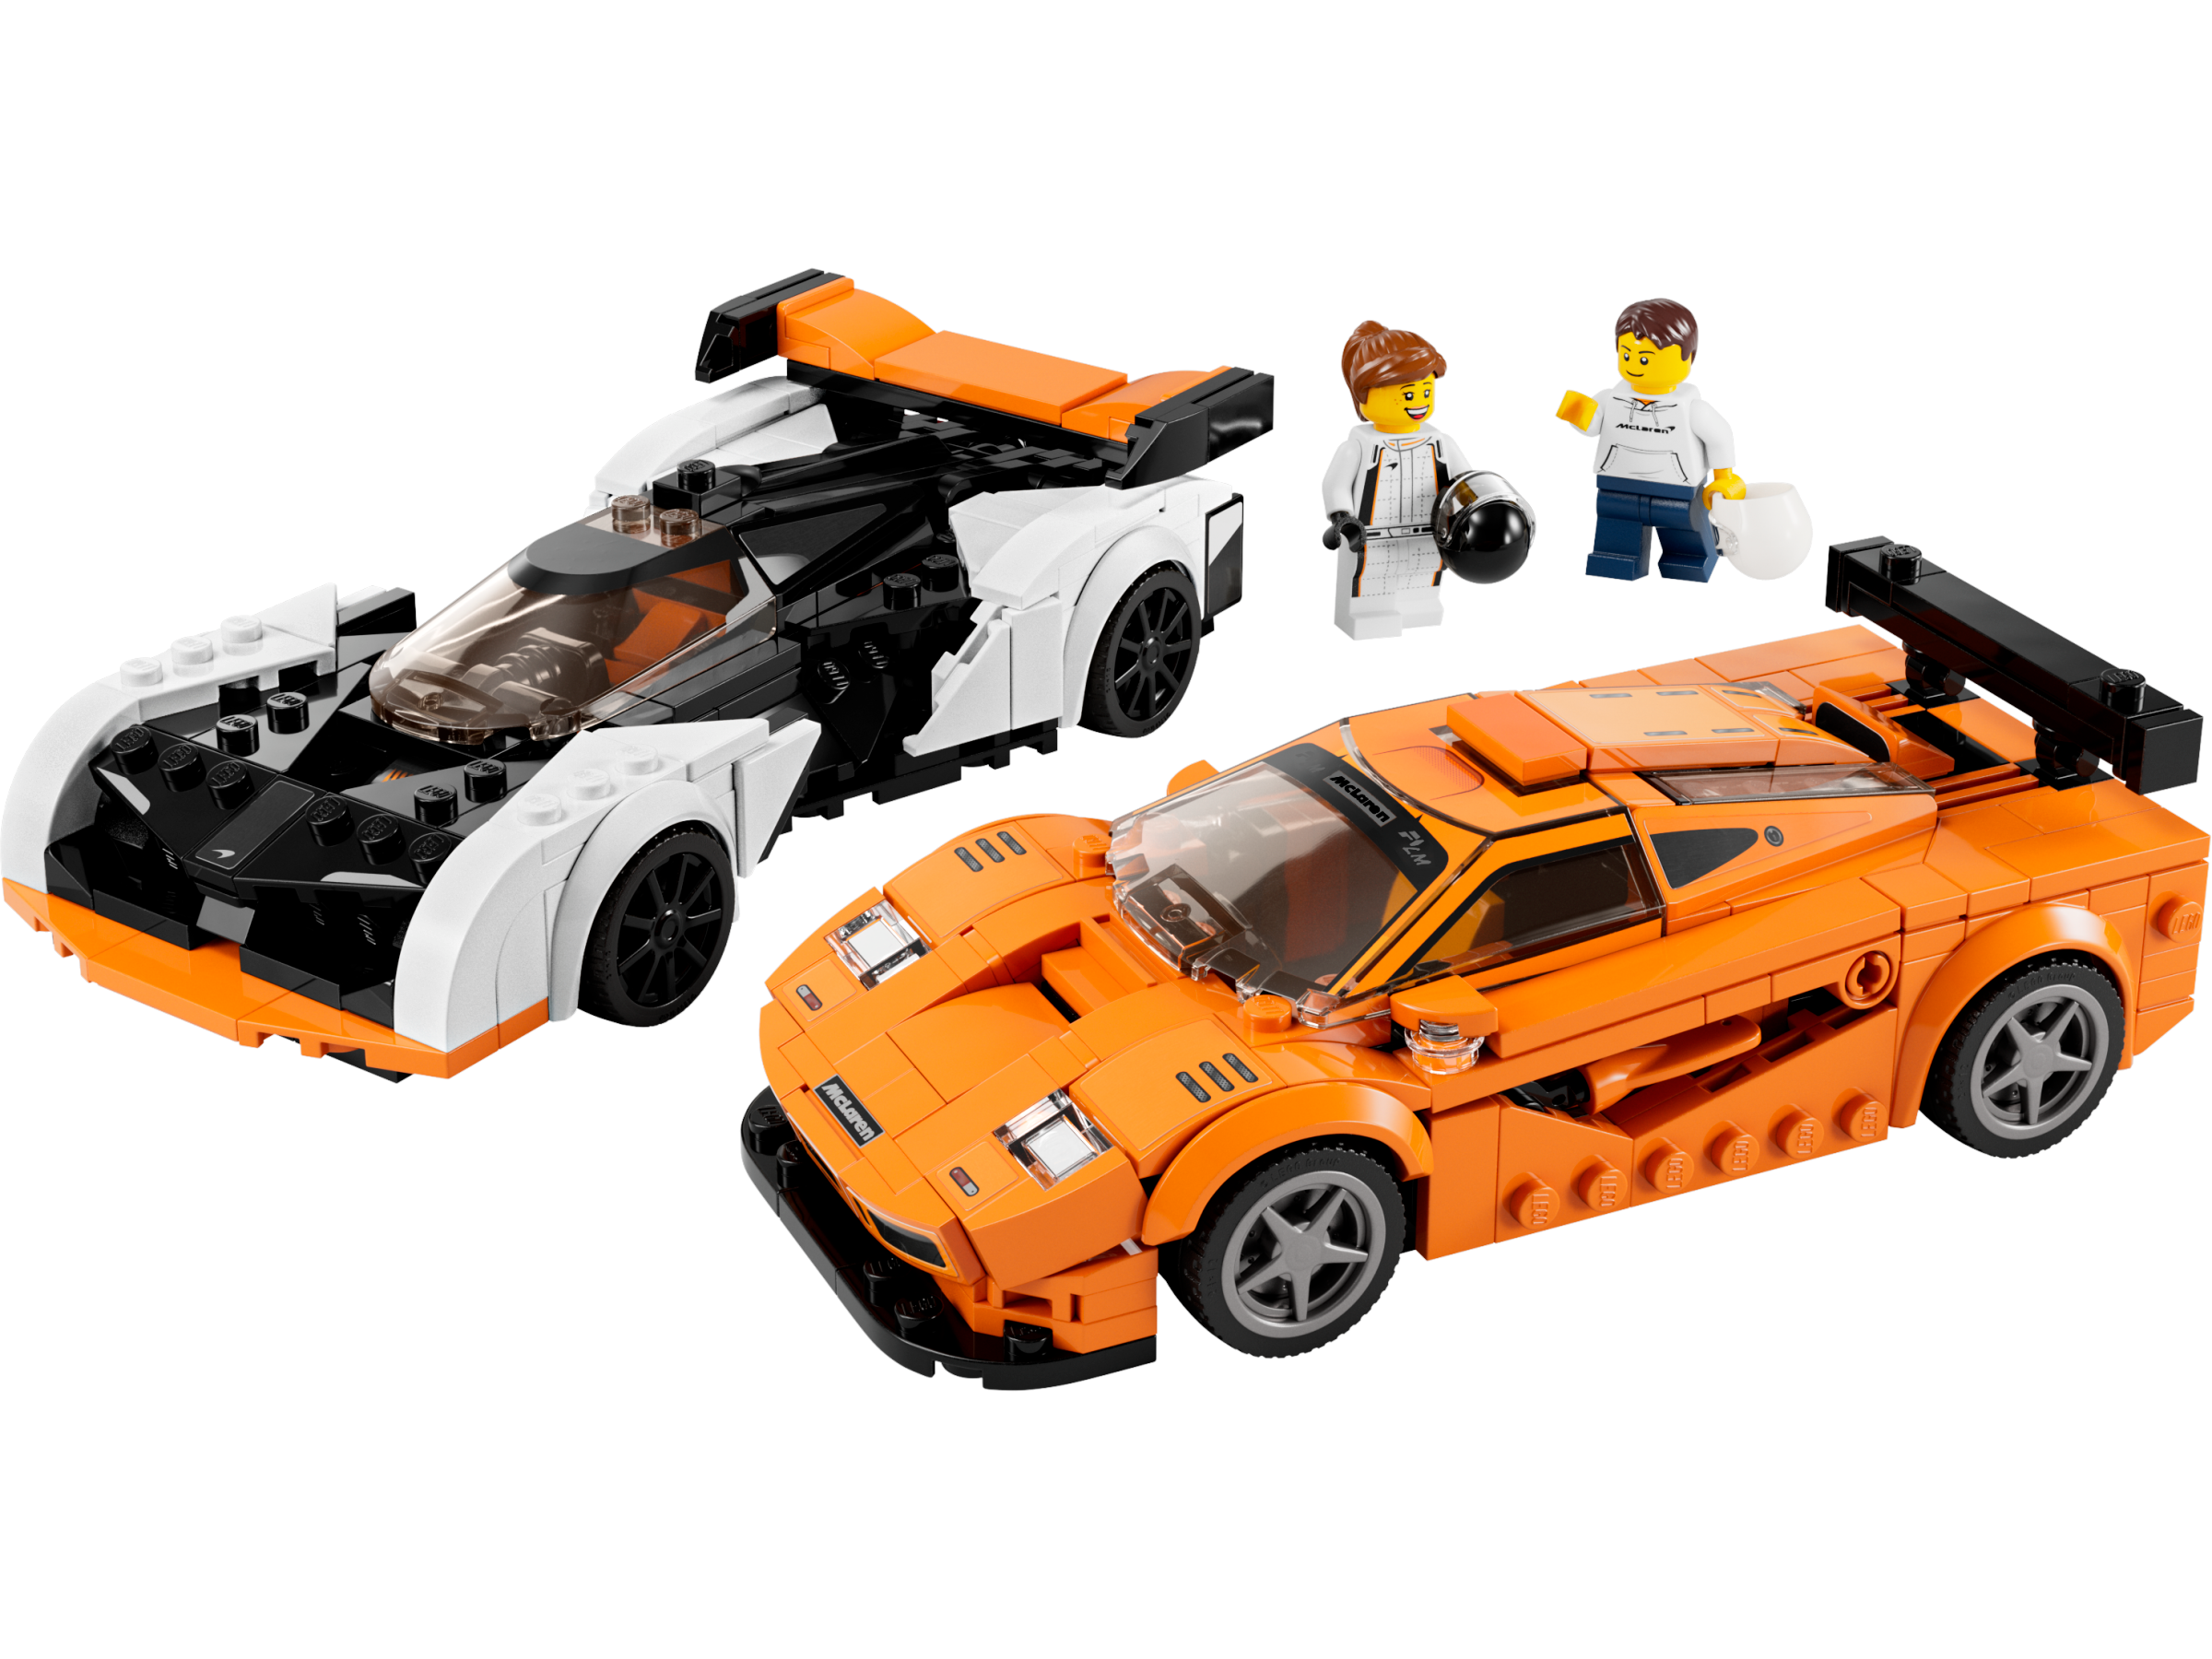 Lego 76918 McLaren Solus GT & McLaren